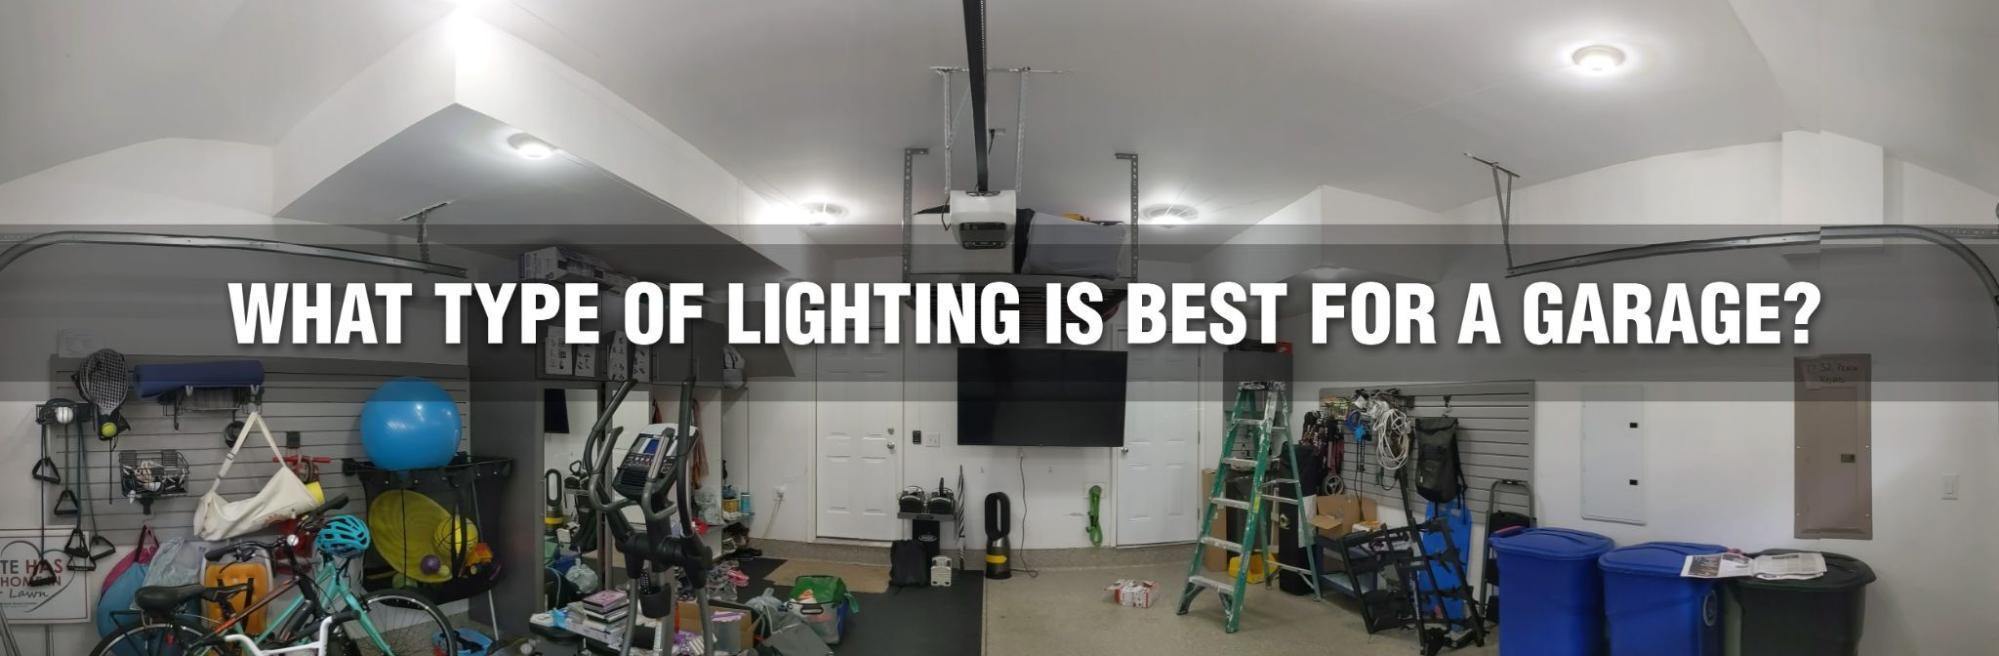 Choisir un éclairage pour son garage